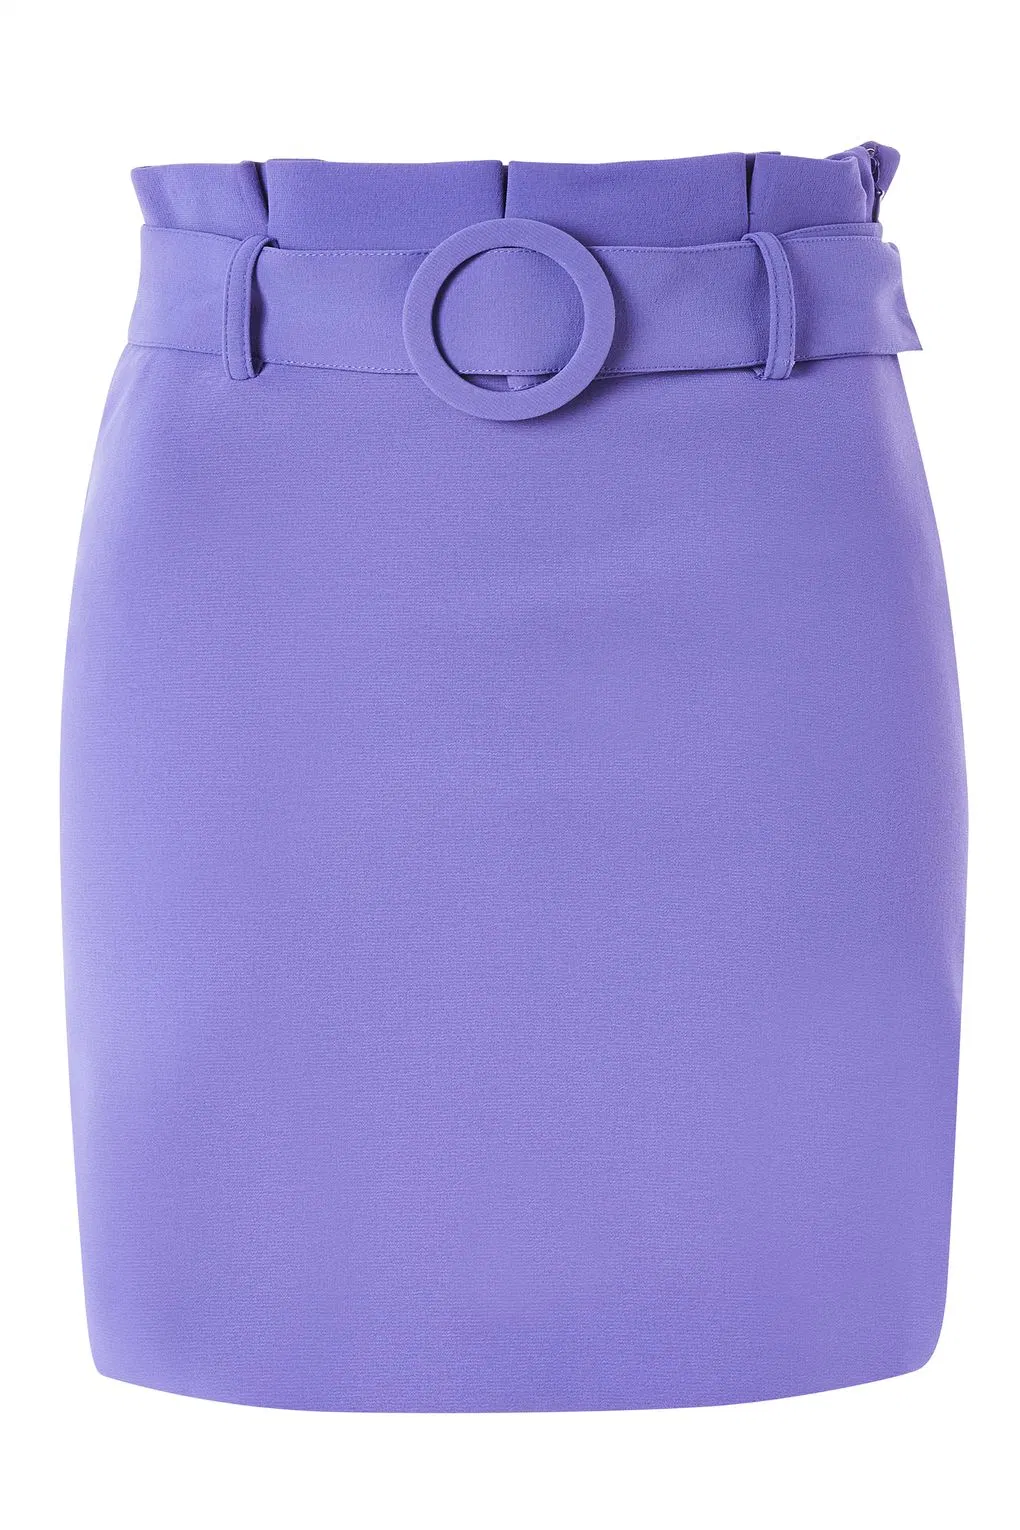 2017 Venta caliente diseños de moda los cinturones de seguridad bolsas de papel mini falda para las mujeres